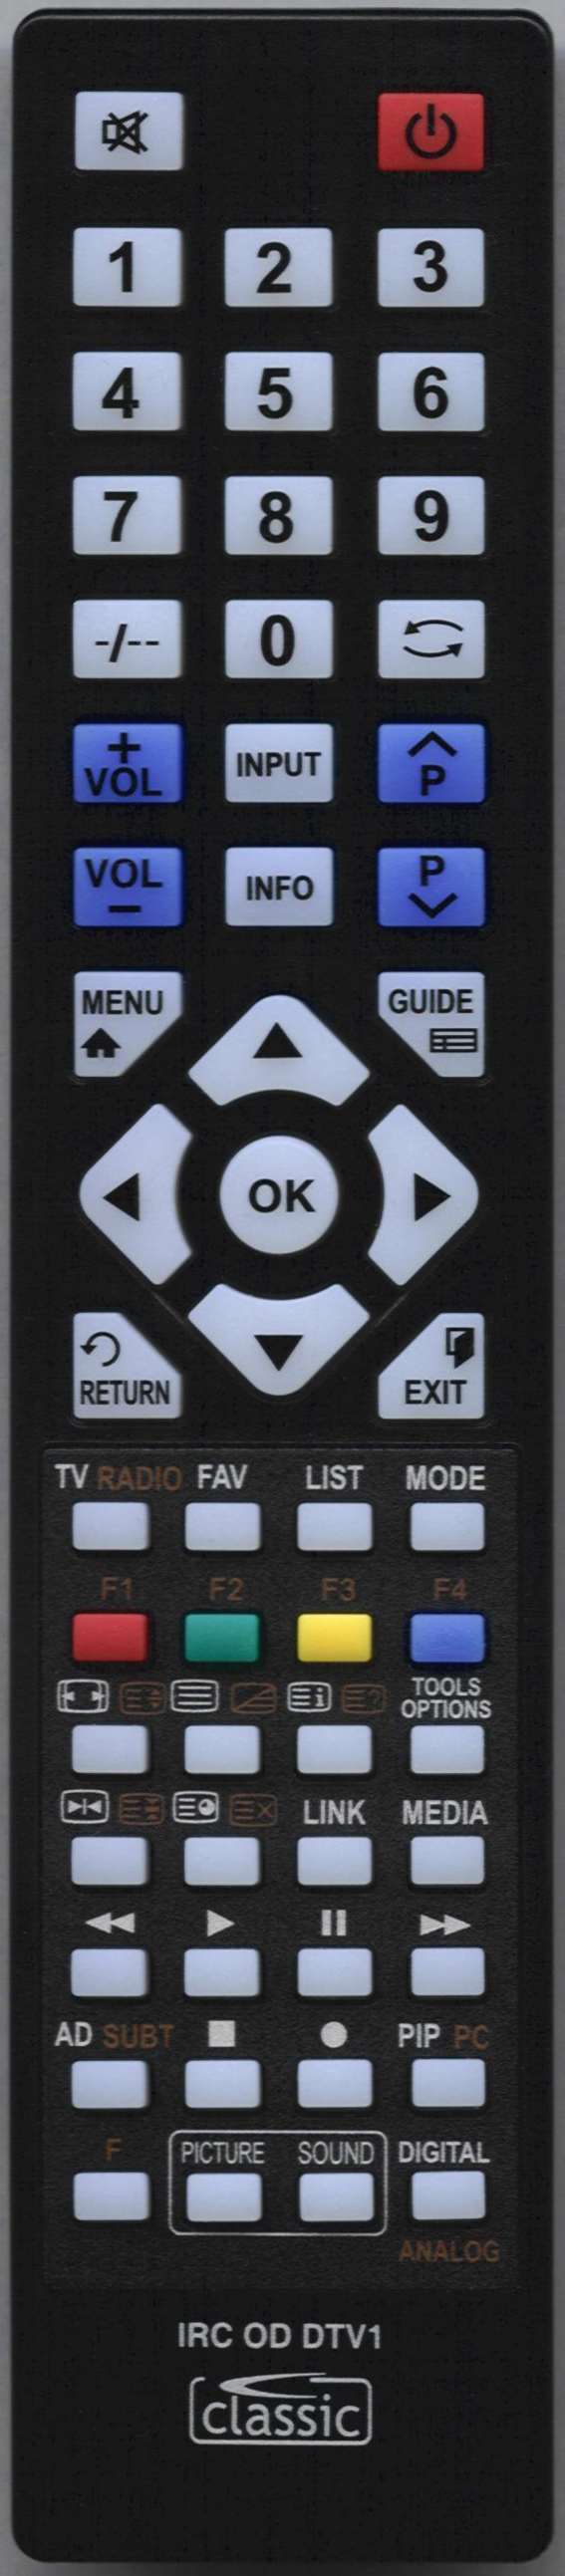 Beko 40 WLU530HID Remote Control